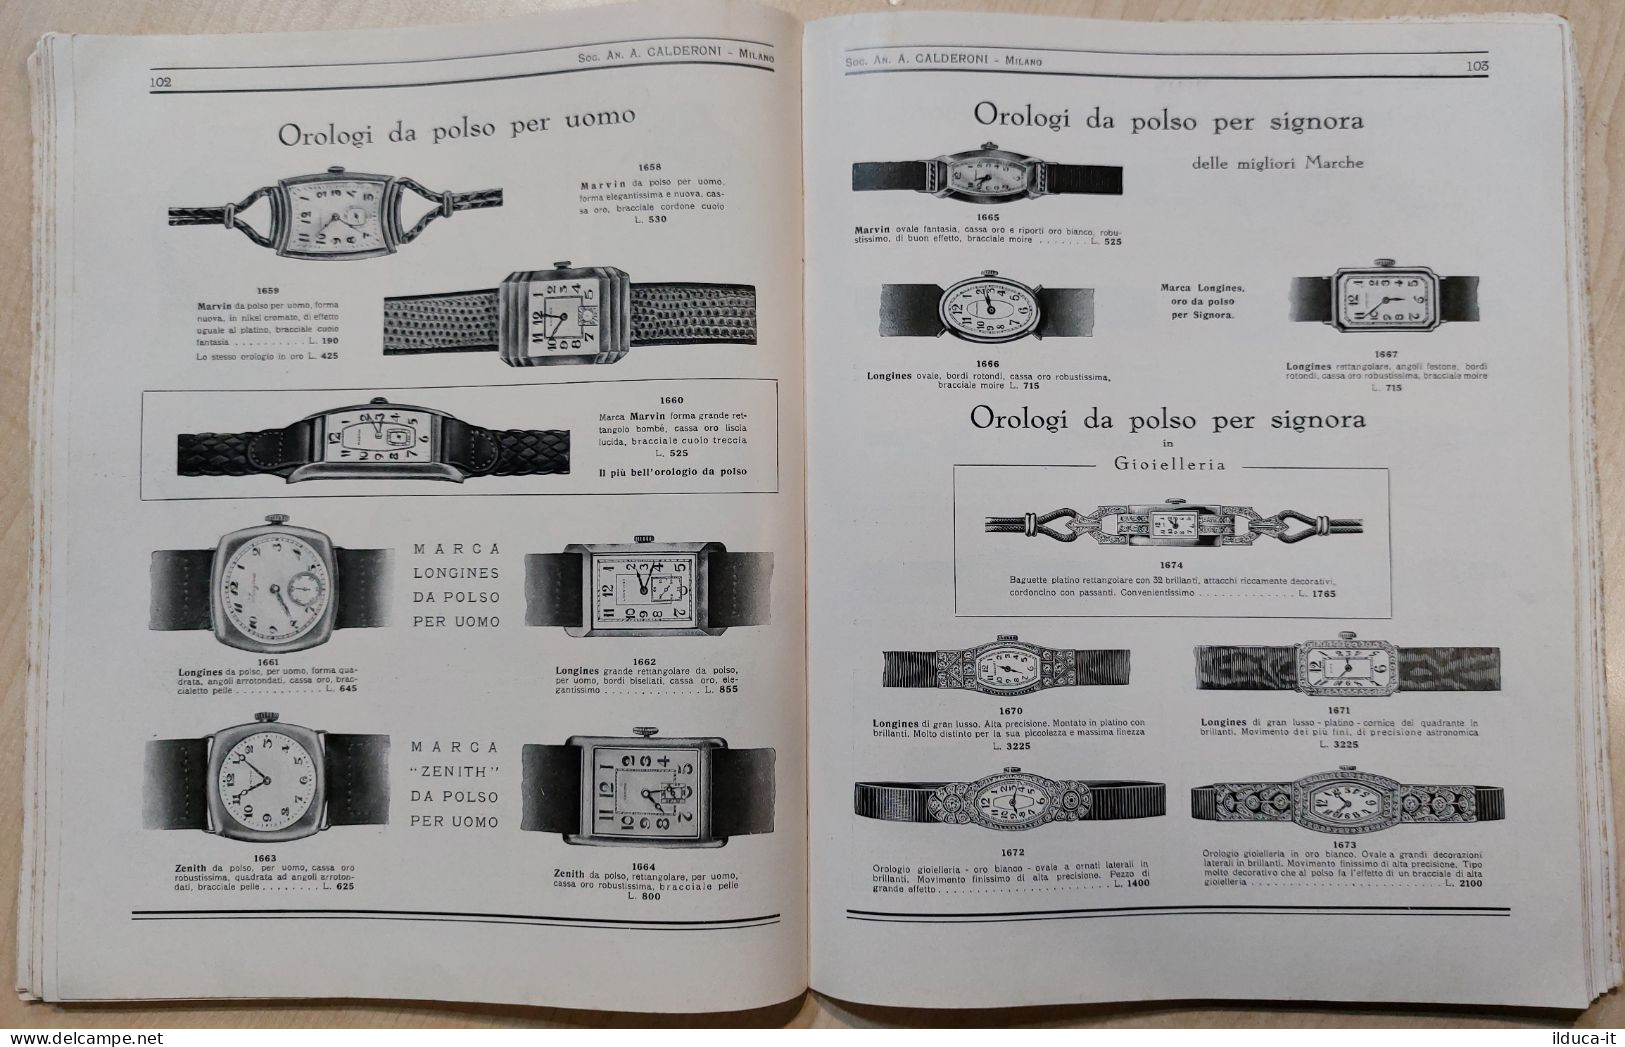 I114149 Catalogo gioielli Calderoni 1937 - Il brillante La moneta dei secoli